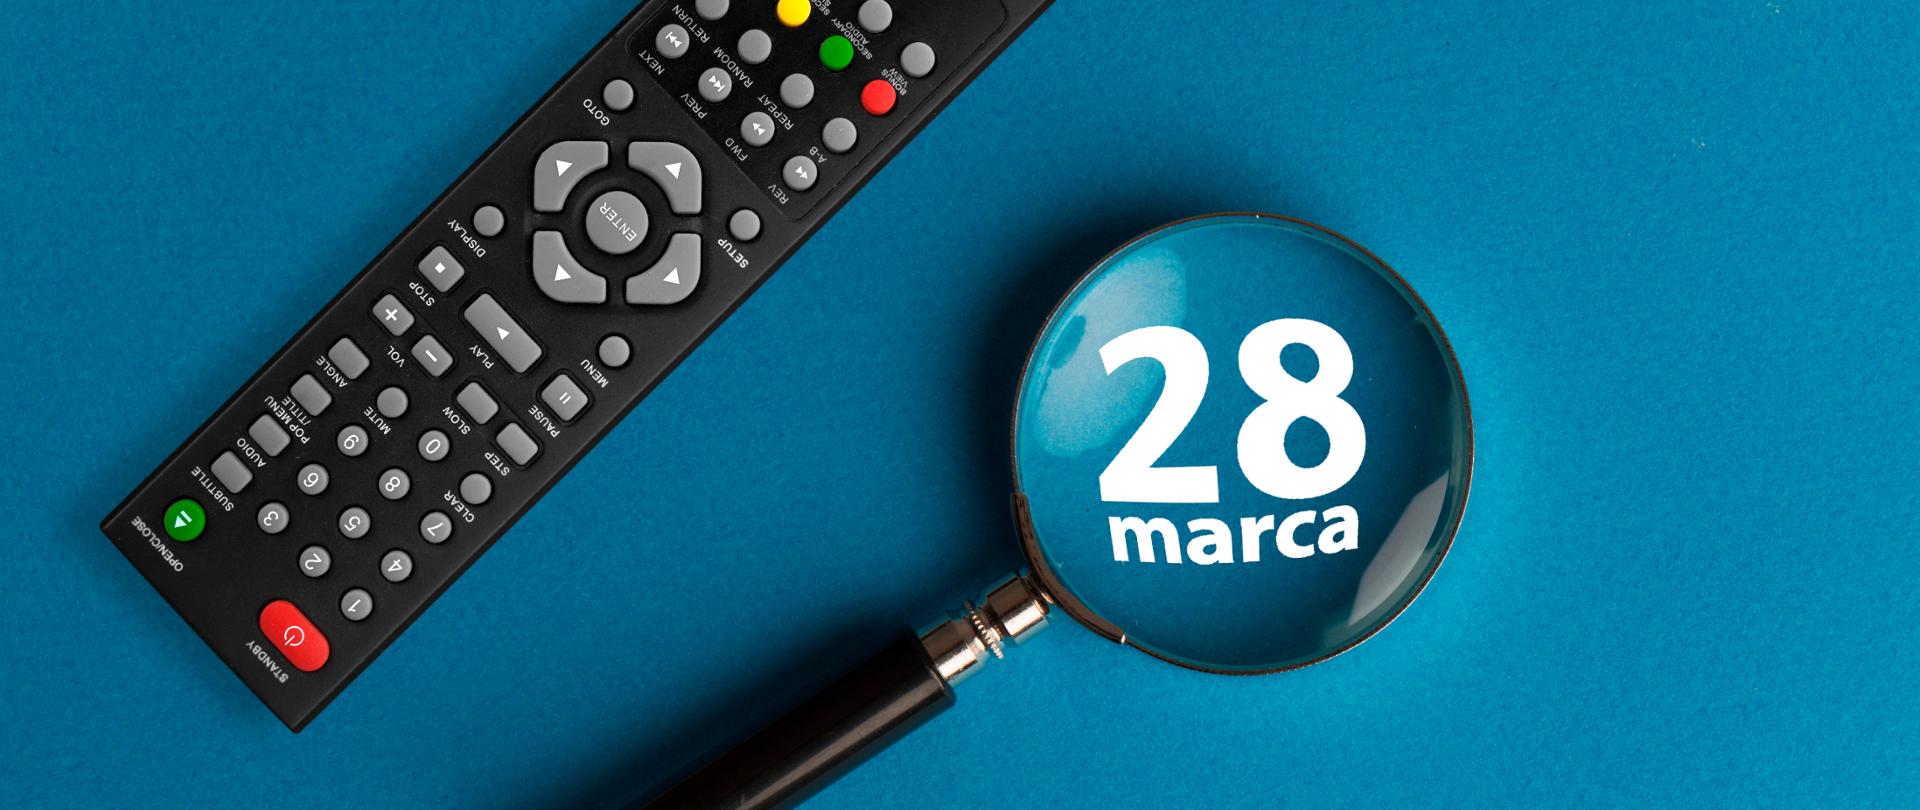 Pierwsze przełączenie na nowy standard TV już 28 marca!